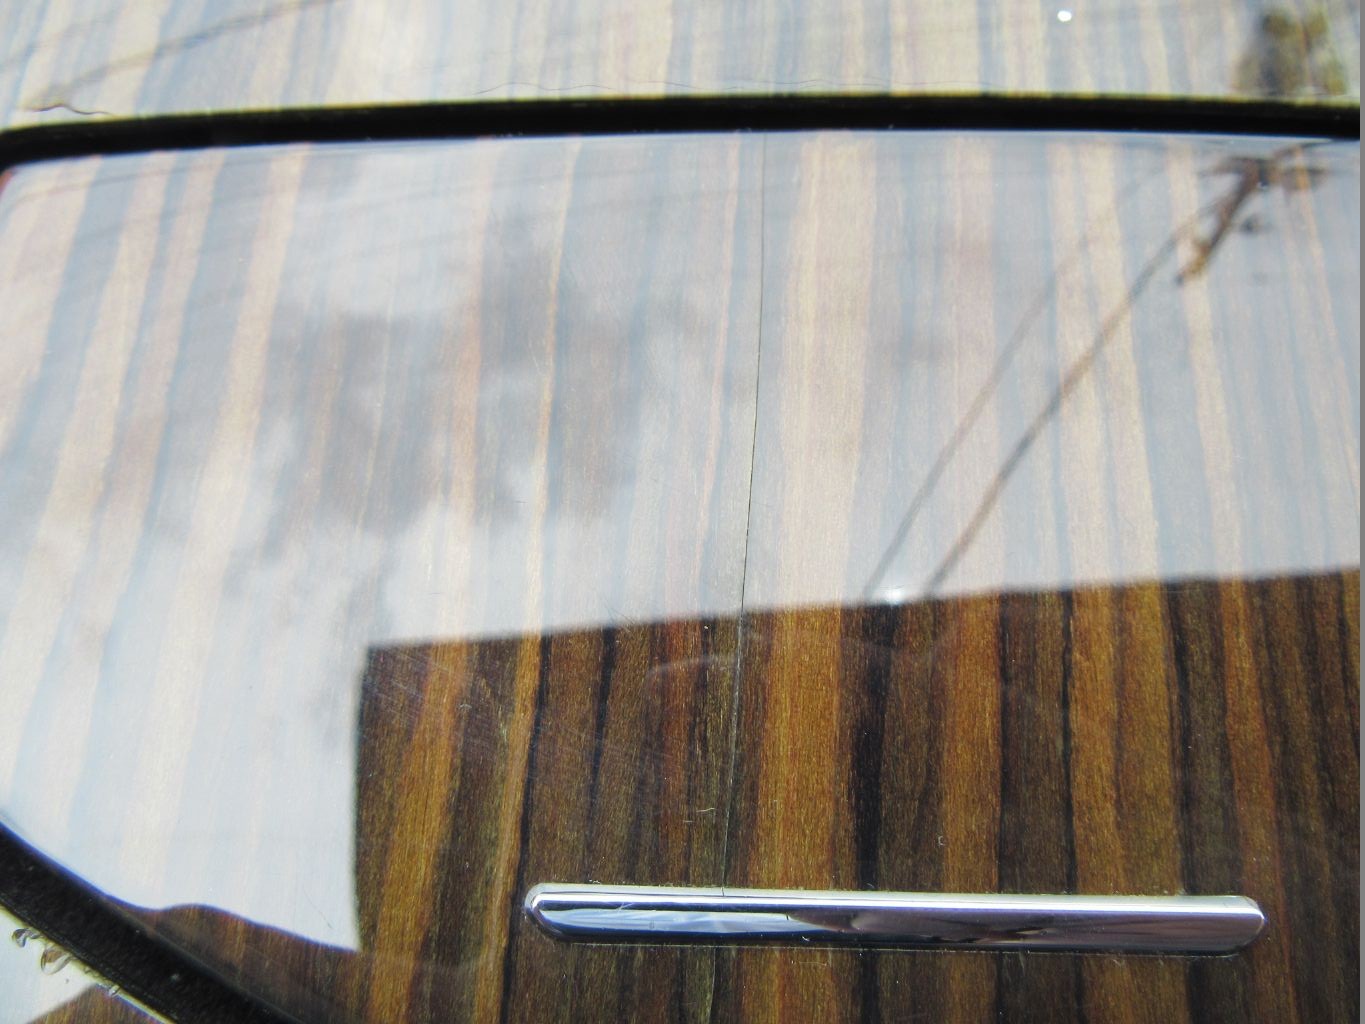 Maserati Ghibli Quattroporte center console compartment trim panel gloss wood #8486